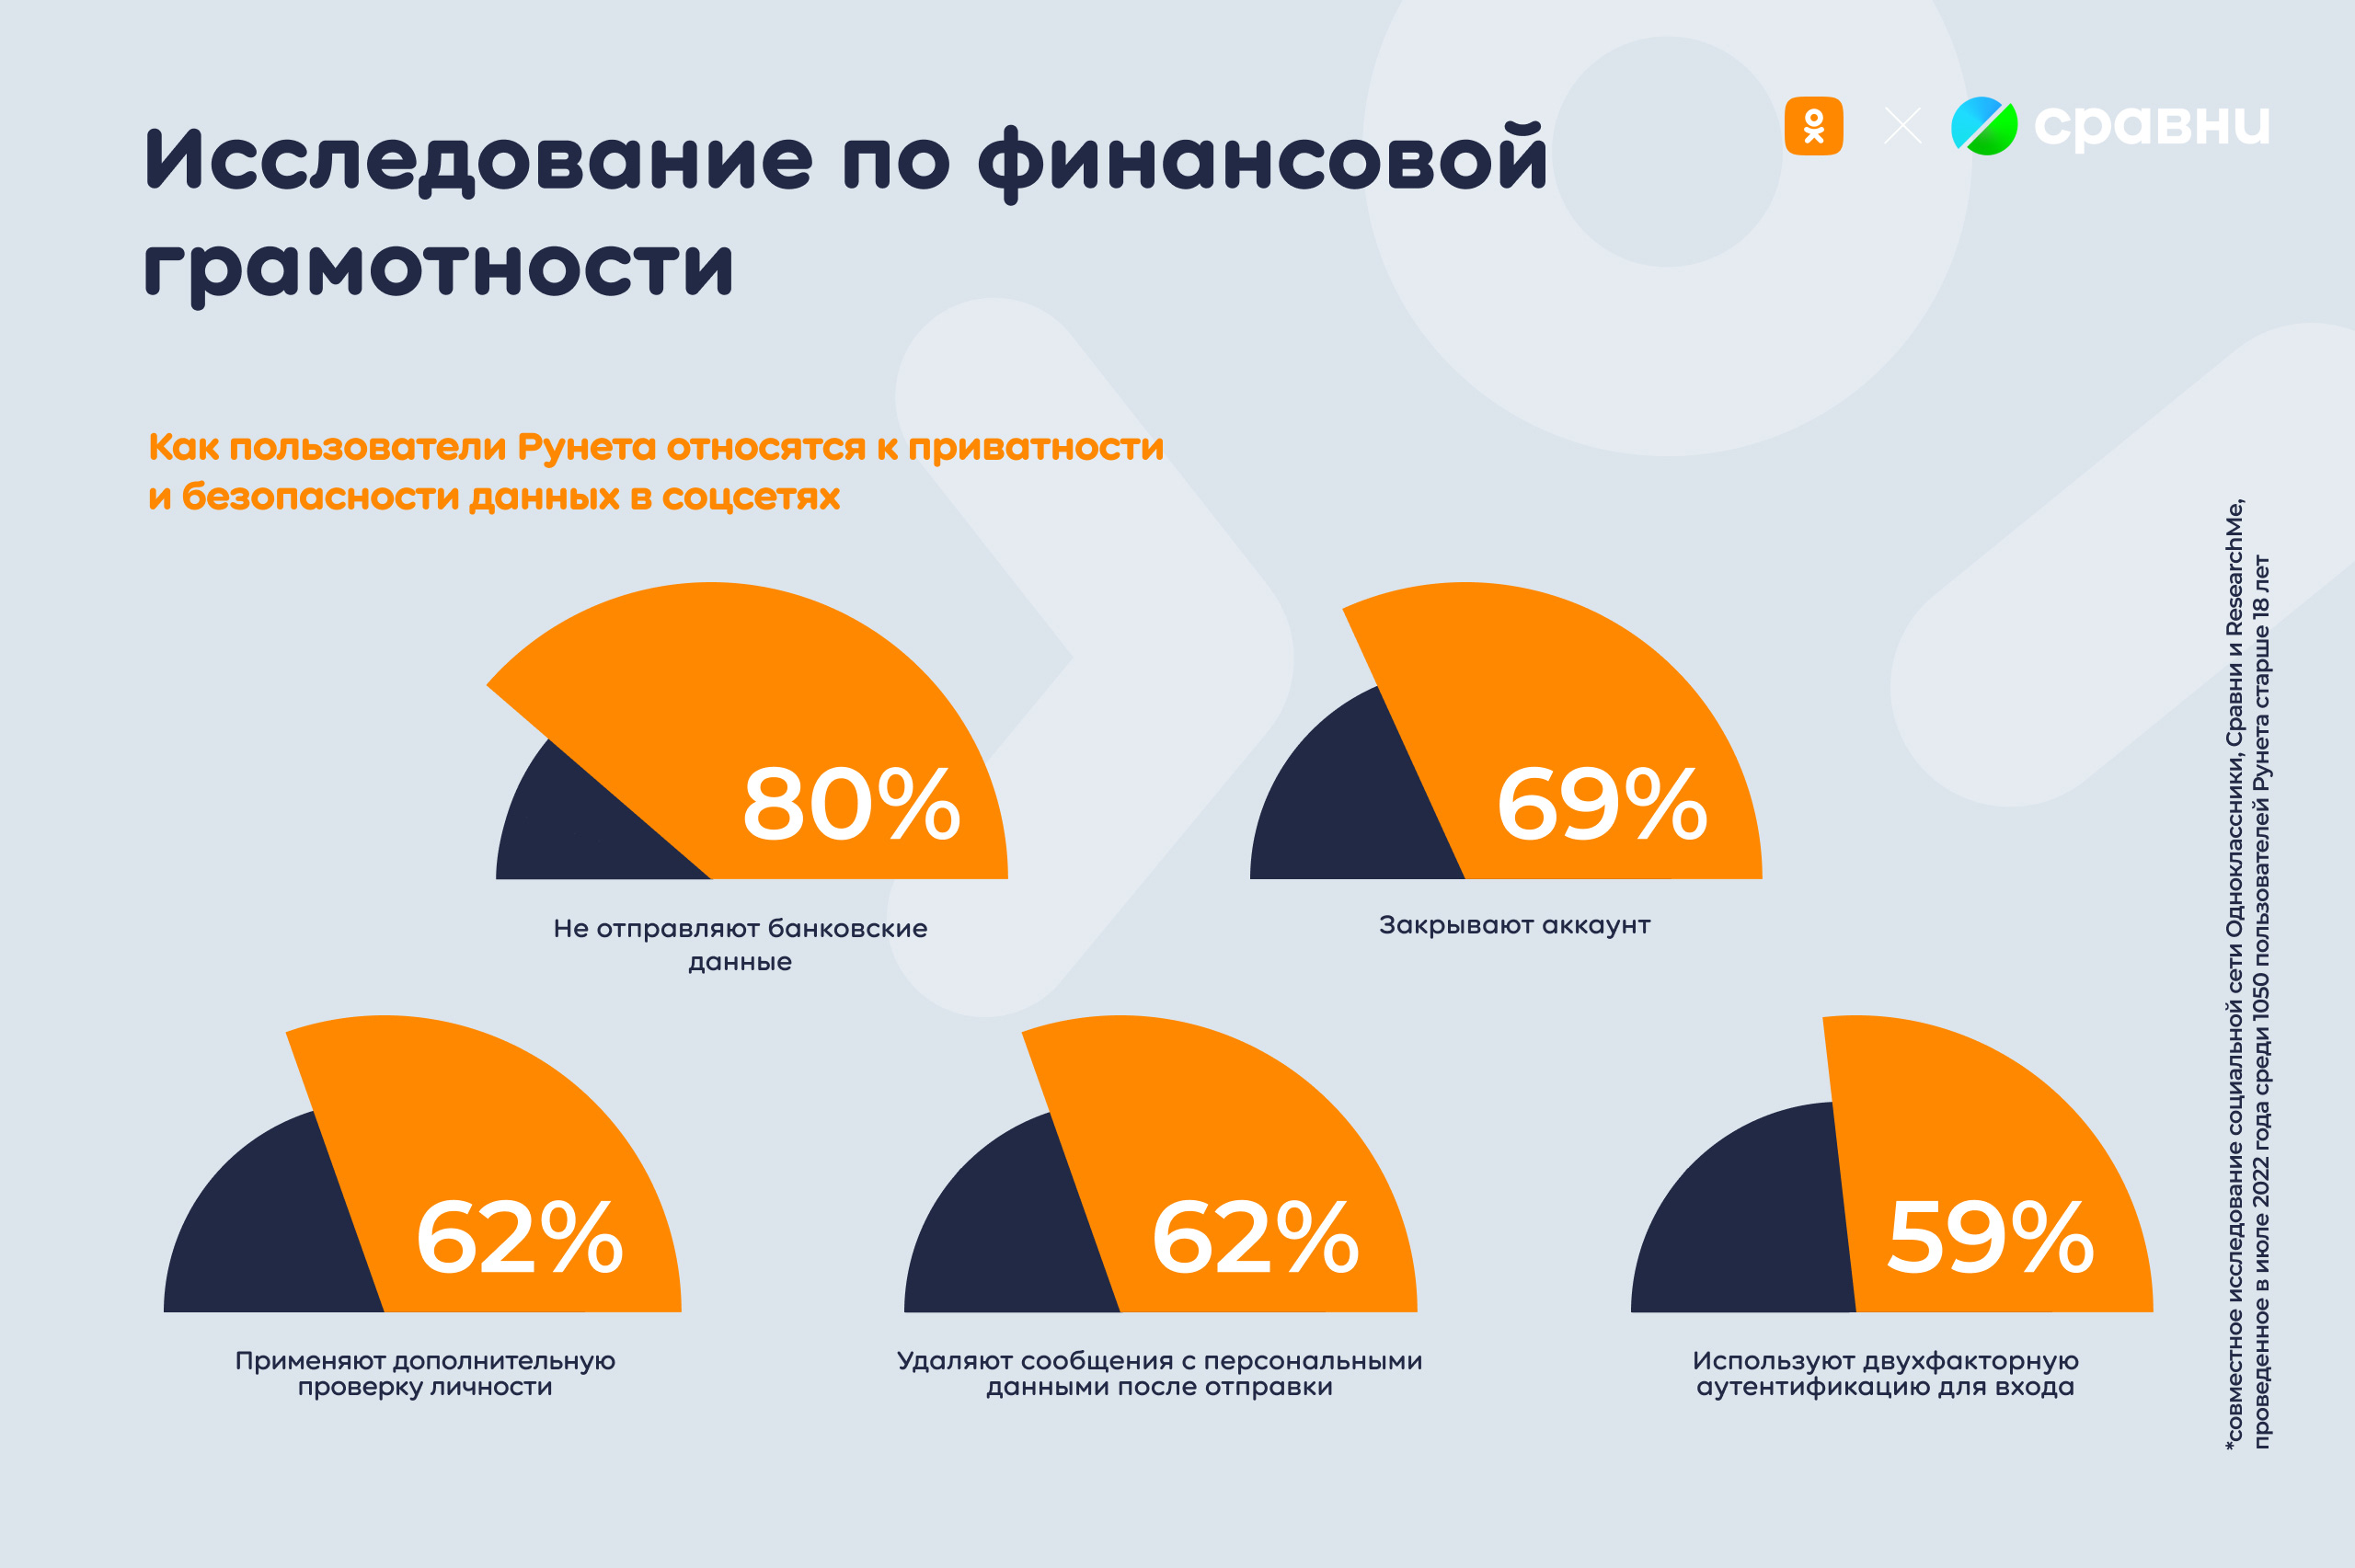 Каждый пятый пользователь Рунета использует специальную карту для покупок в Интернете и социальных сетях | Новости